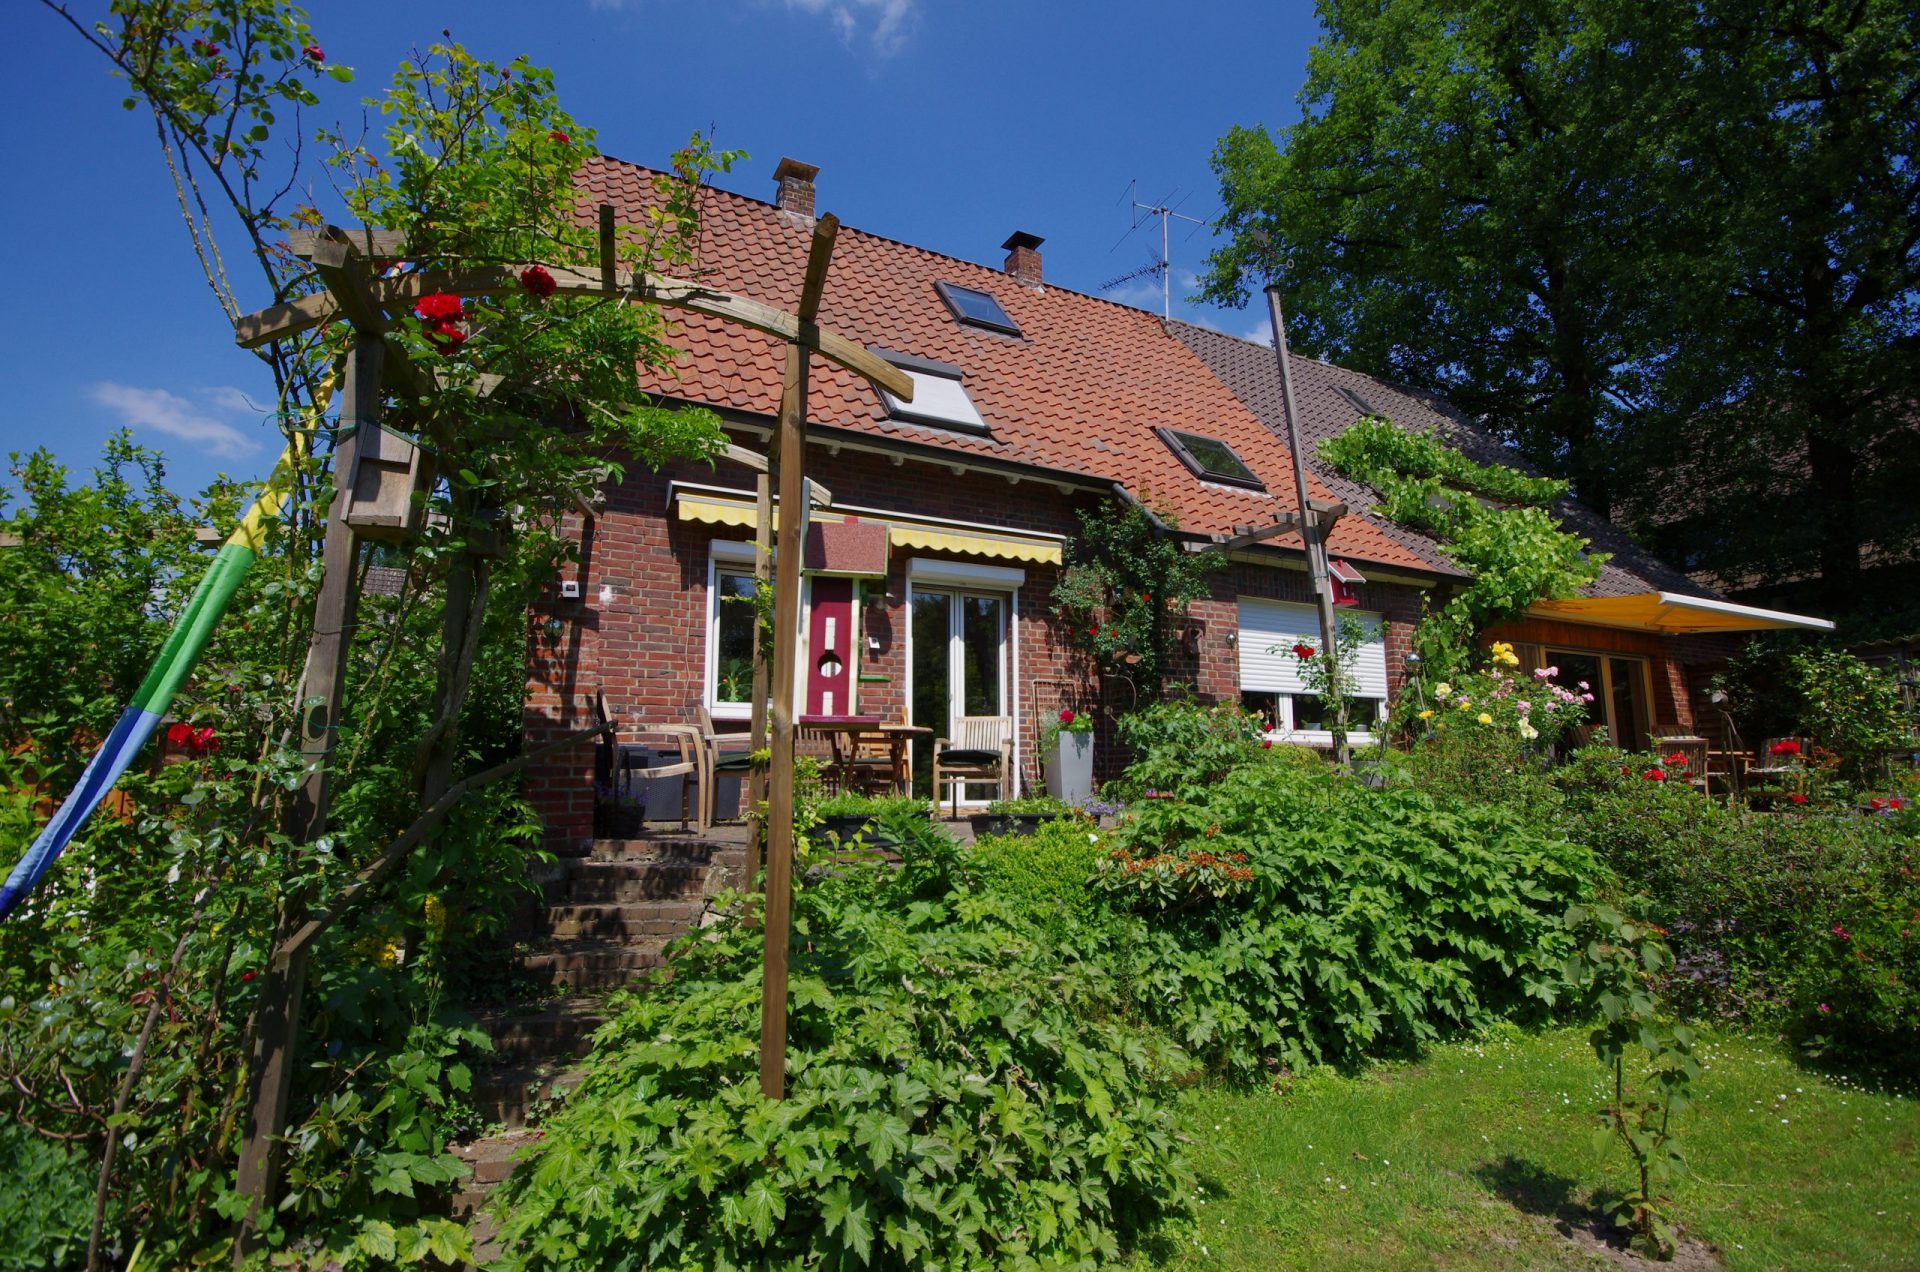 Gartenseite beim Umbau Einfamilienhaus in NRW